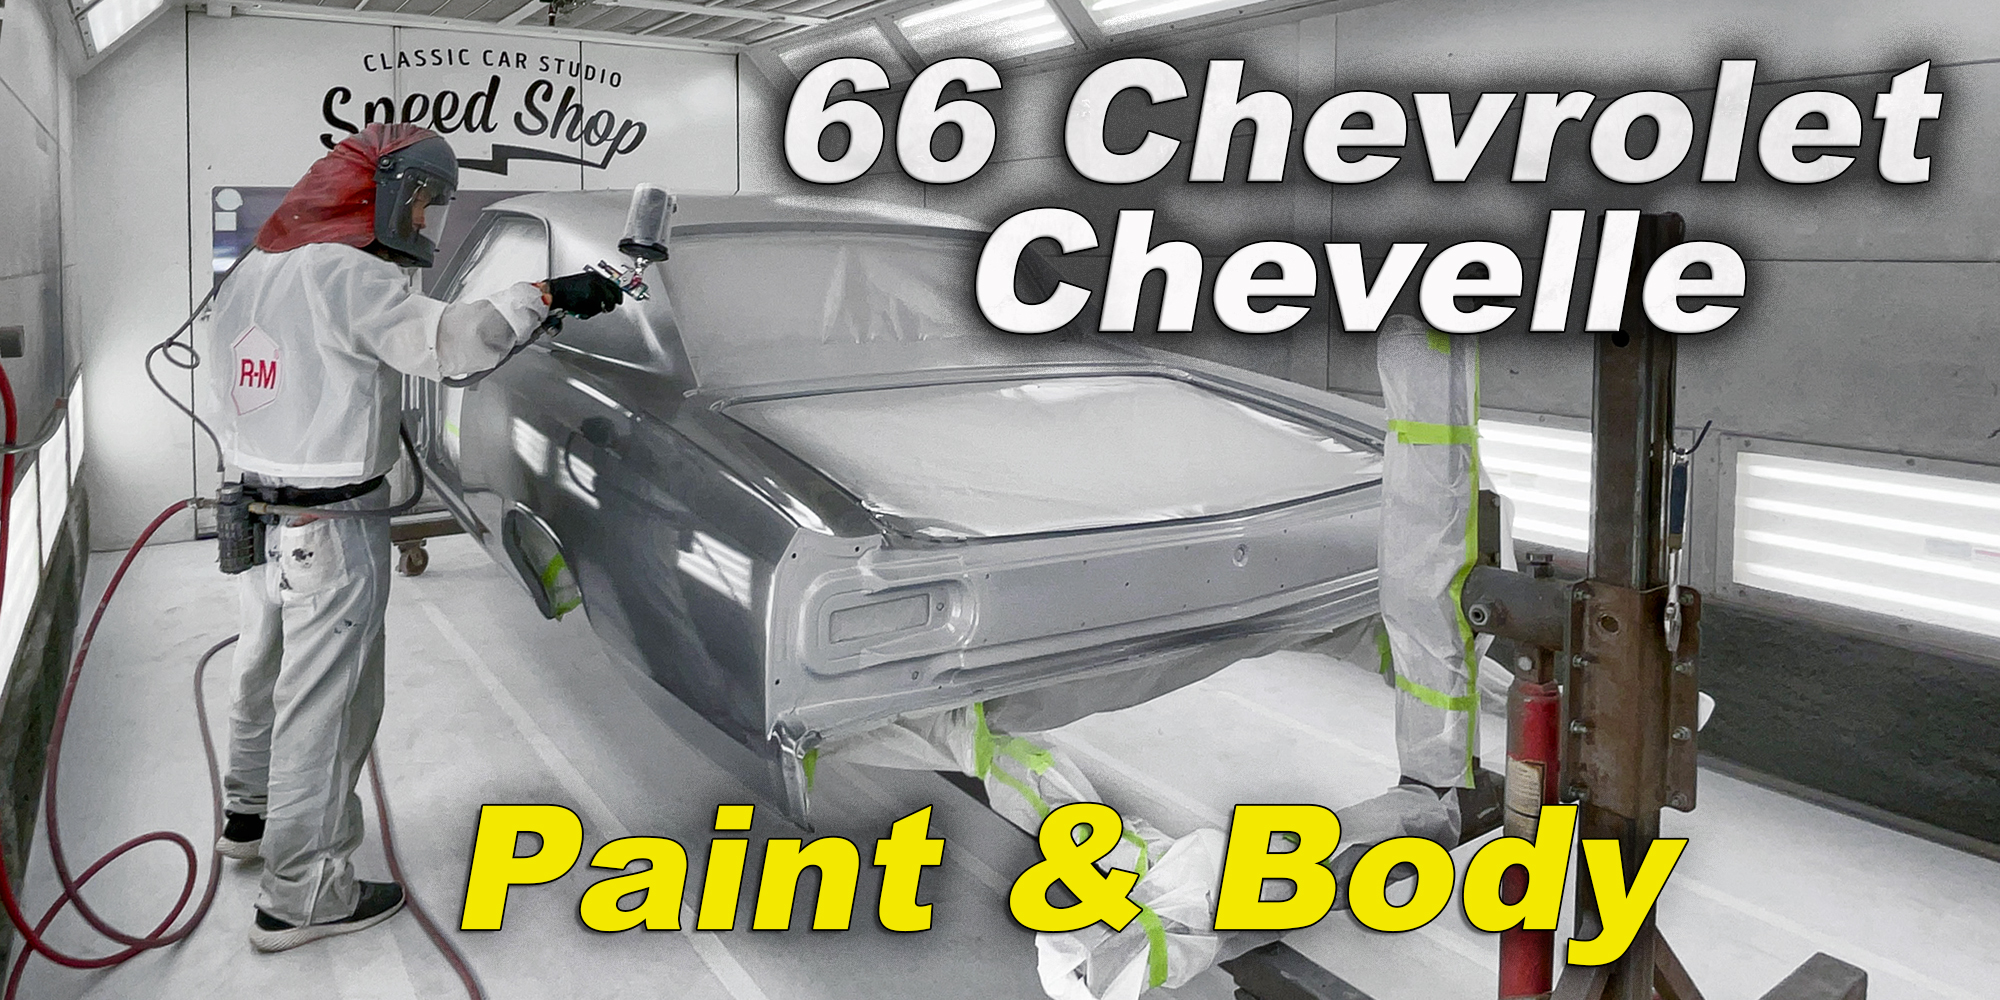 66 Chevrolet Chevelle • Part 3 • Paint & Body 2x1